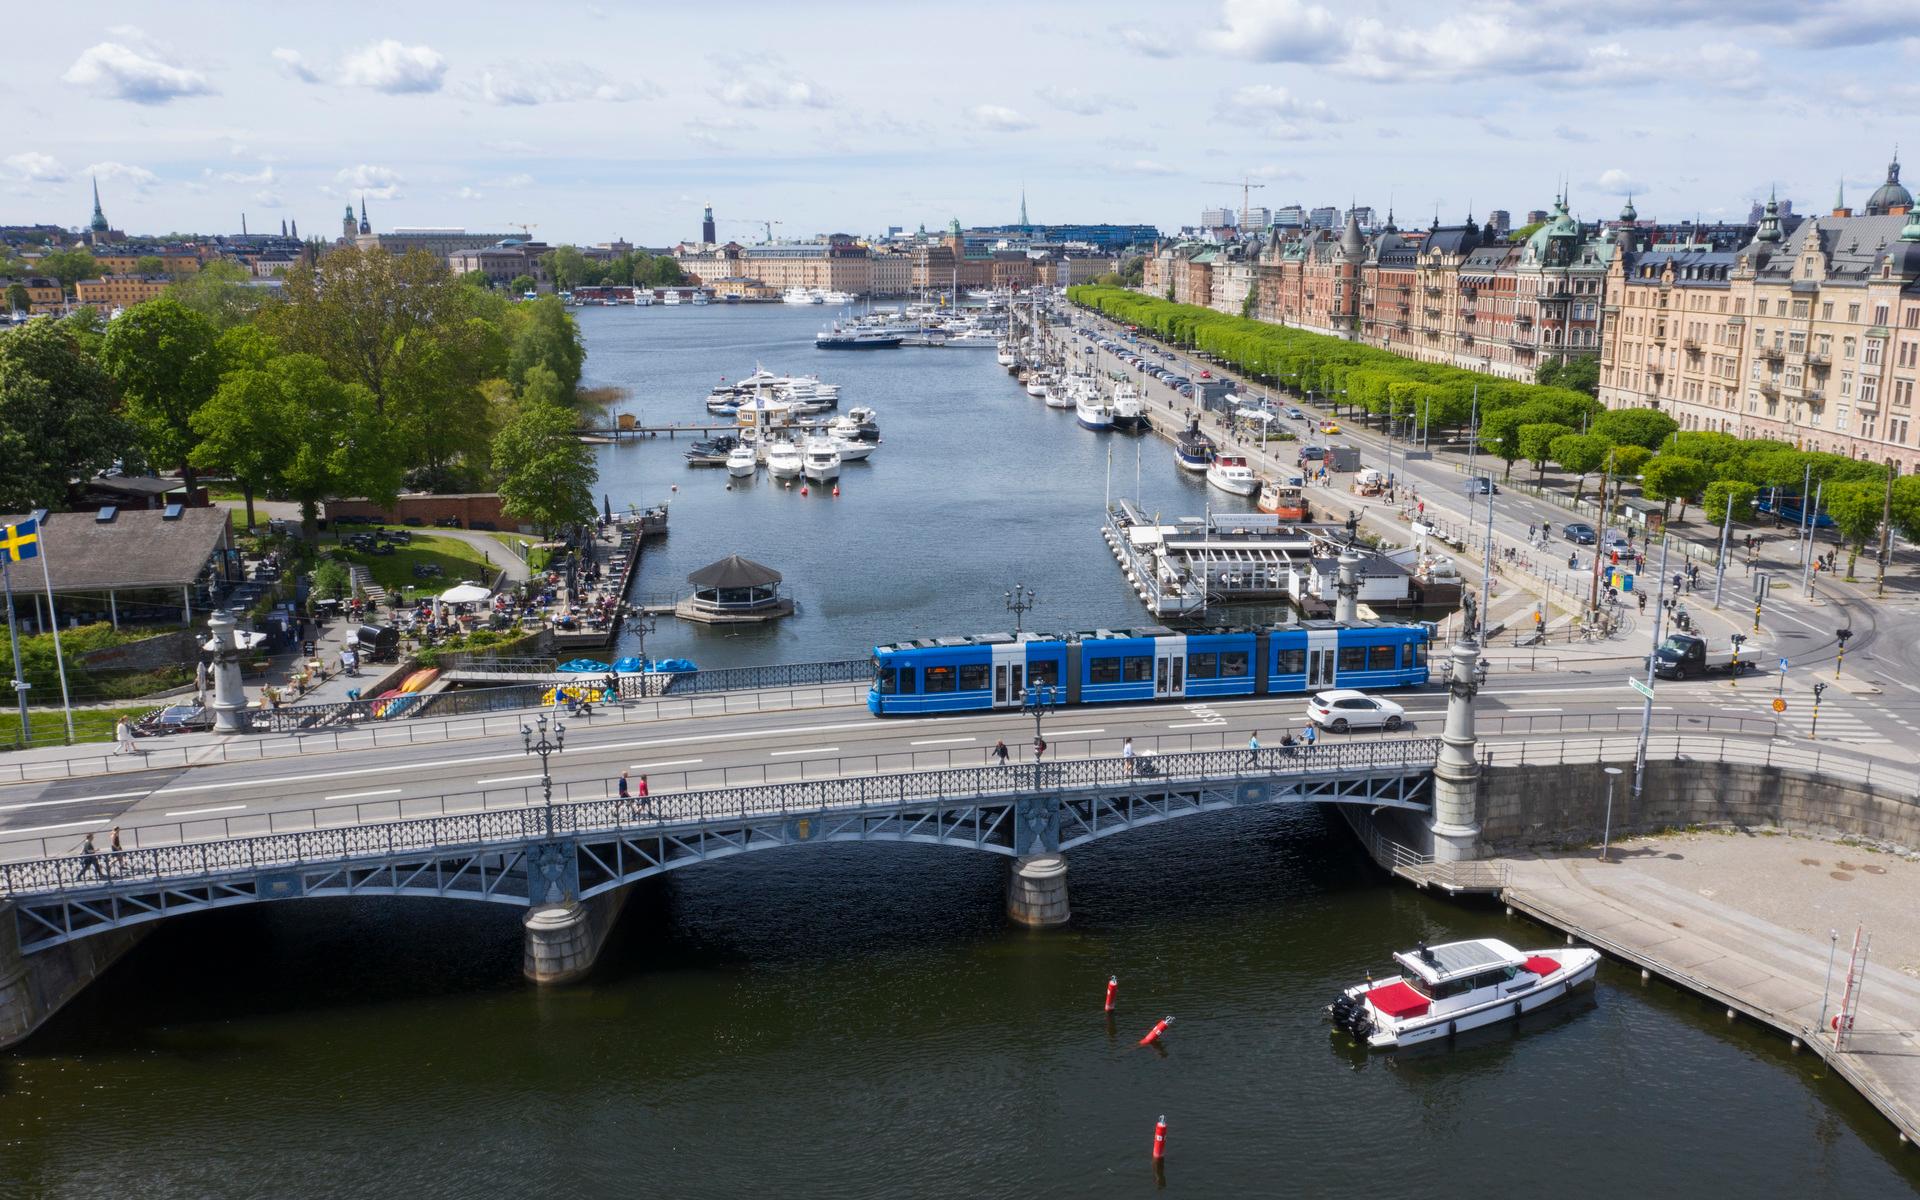 På Östermalm ligger den gata där bostadsrätter ökat mest i pris i kronor under de senaste två åren enligt Fastighetsbyrån. Stockholm dominerar rejält på tio i topp-listan när det gäller värdeökning i kronor. 